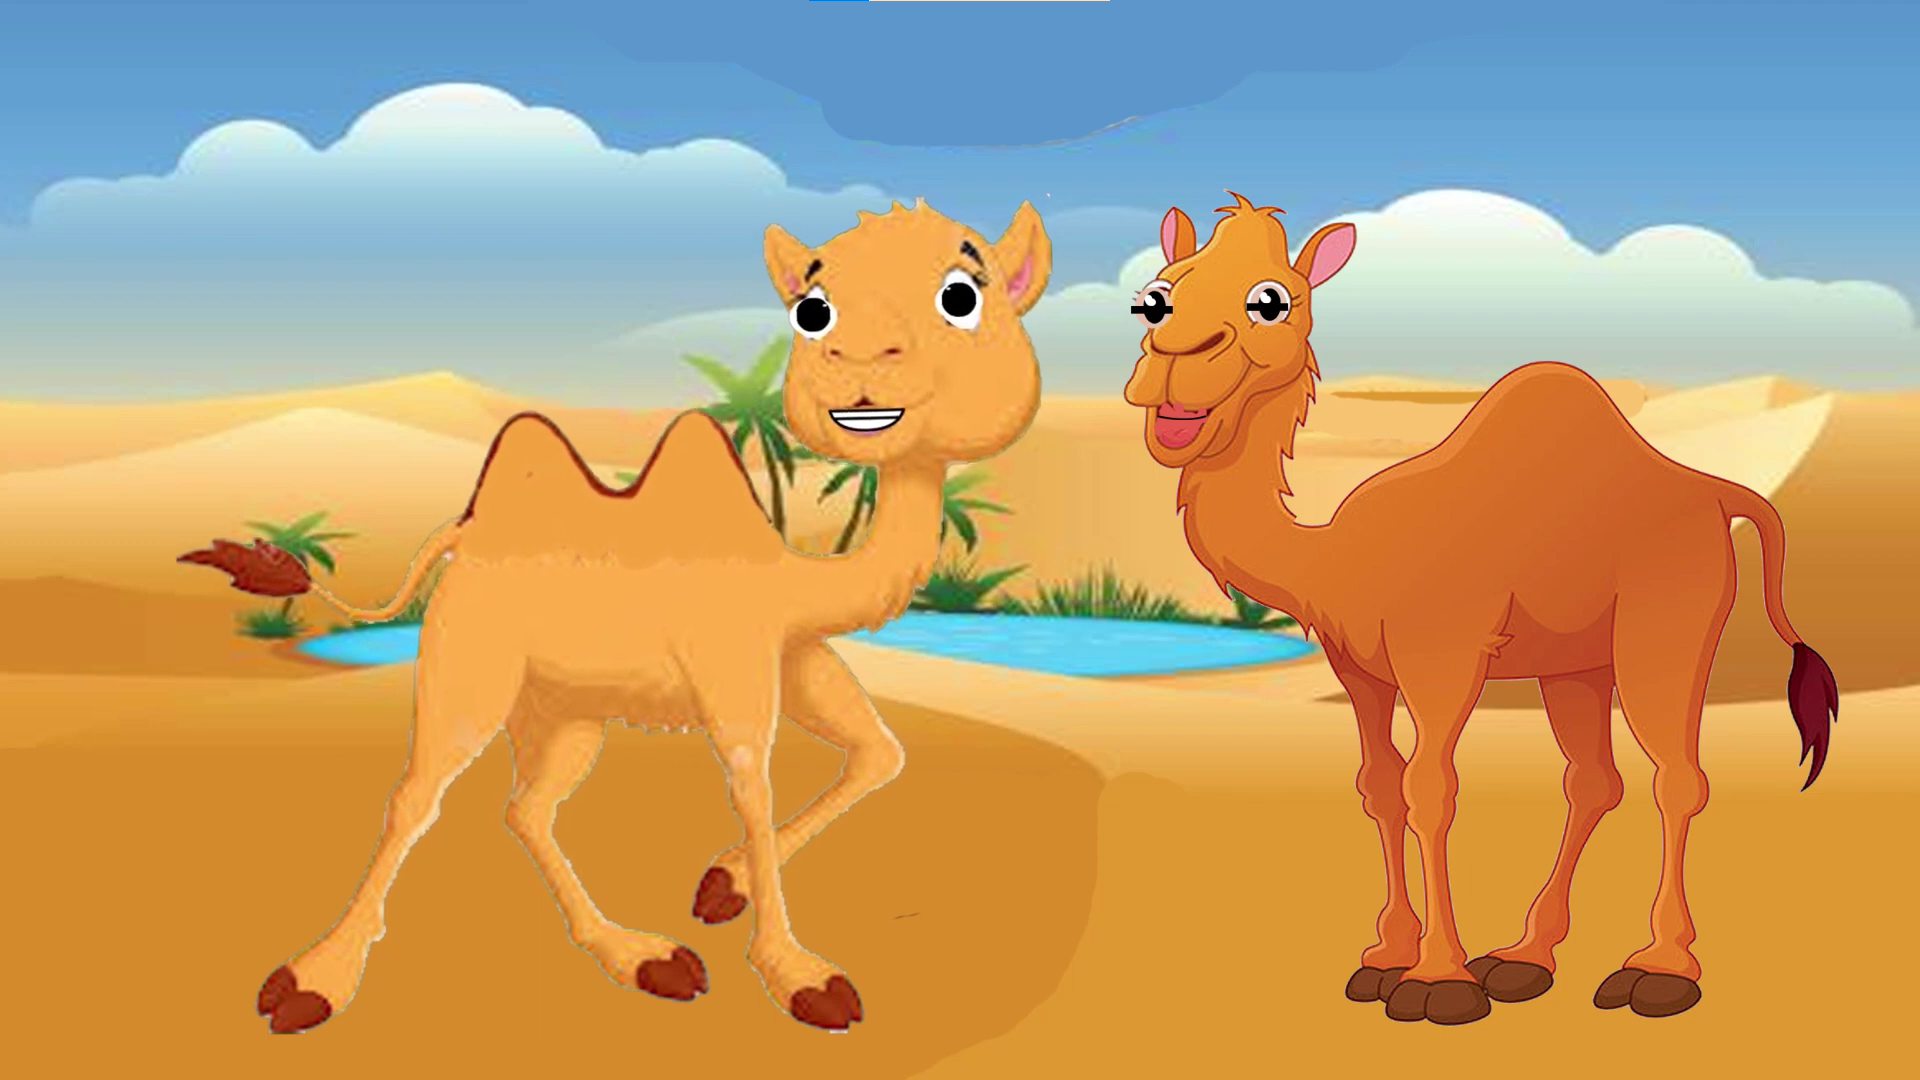 El camello y el dromedario